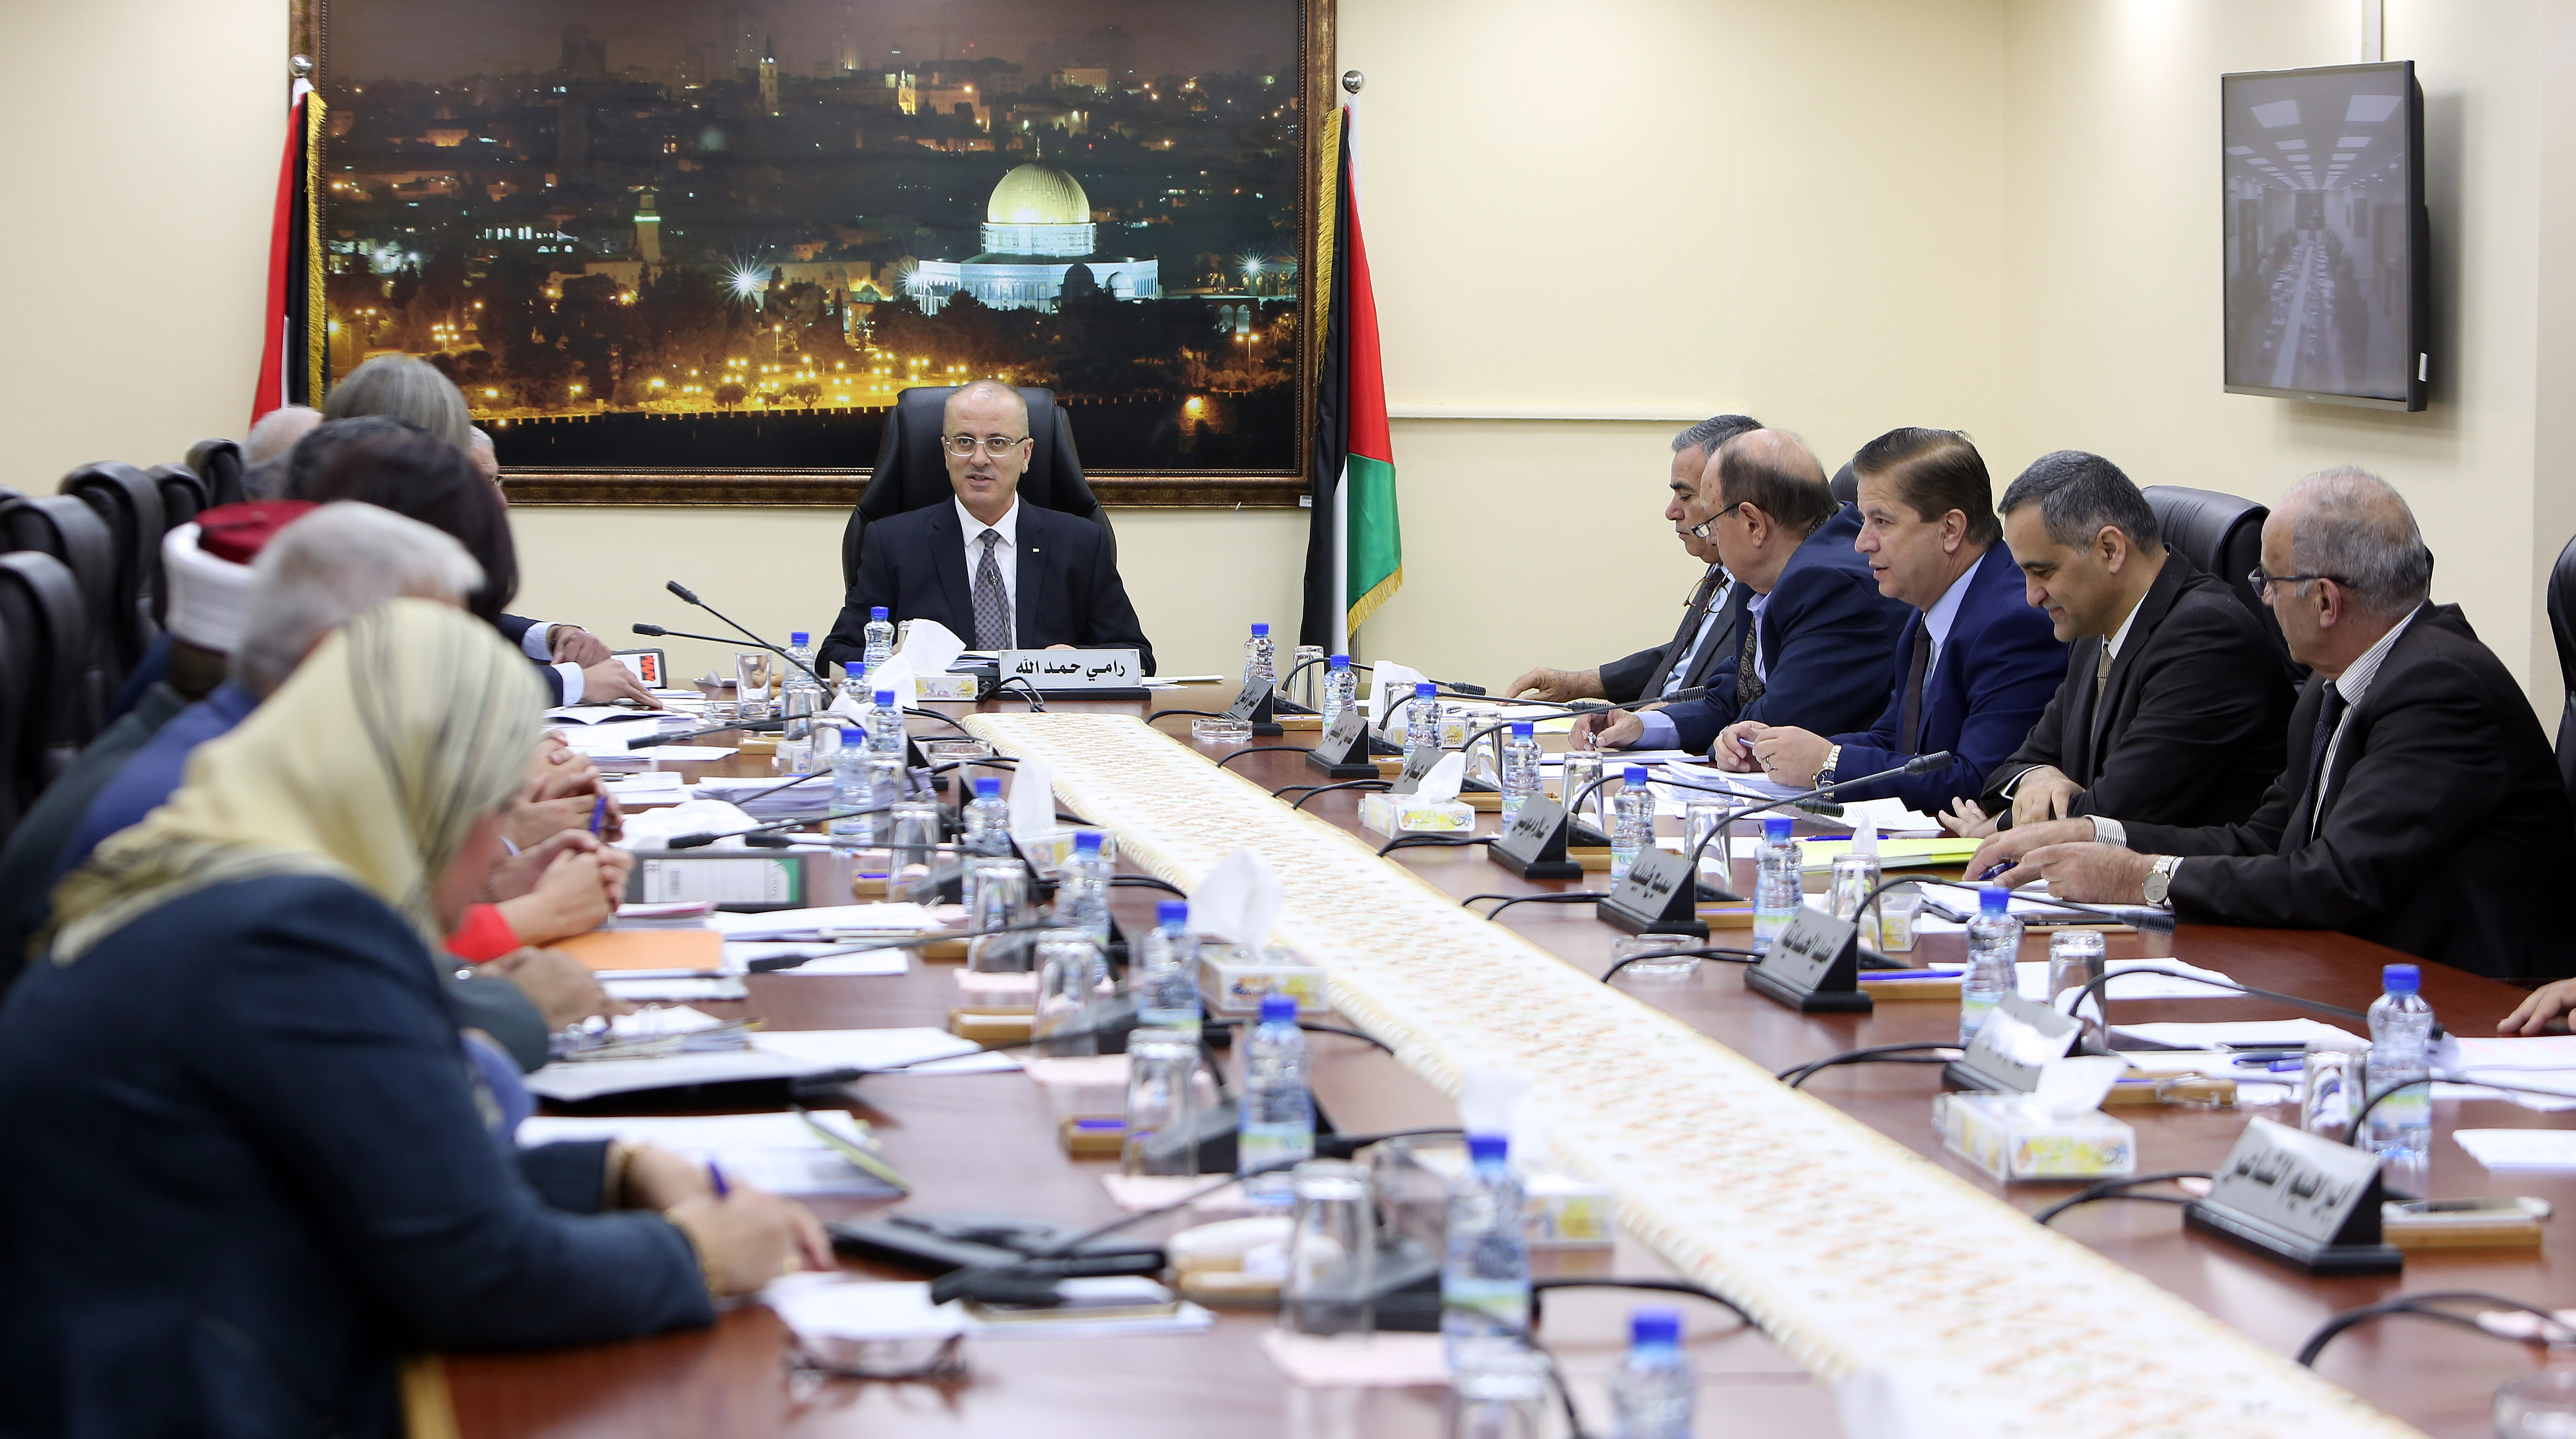 مجلس الوزراء يؤكد دعم الحكومة الكامل للفصائل الفلسطينية للوصول إلى اتفاق شامل حول الملفات المطروحة



